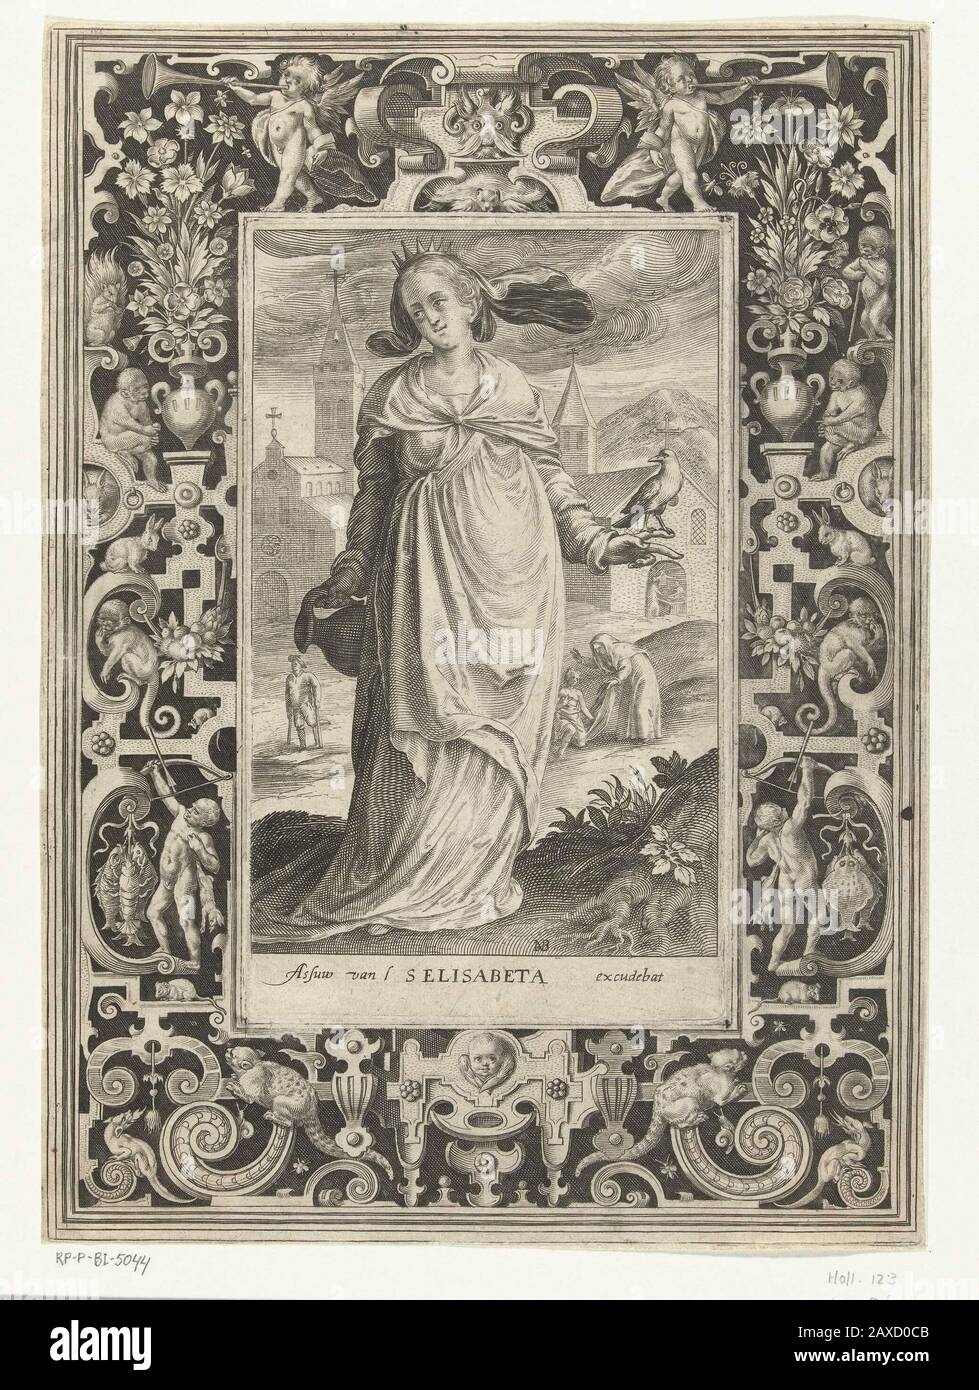 'Heilige Elisabet van Hongarije a rencontré kruik en vogel dans omlijsting a rencontré ornement; Heilige Elisabet van Hongarije a rencontré kruik en vogel. Omijstting met krulornementen verschillende dieren zoals een kat die naar een muis loert, apen en konijnen waarop twee jongens jagen. Bovenaan blazen twee kleine engelen op een tromet.; Iconclasscode: 11 HH(ELISABETH); print; 1581 - 1656; 1581 - 1656; ' Banque D'Images